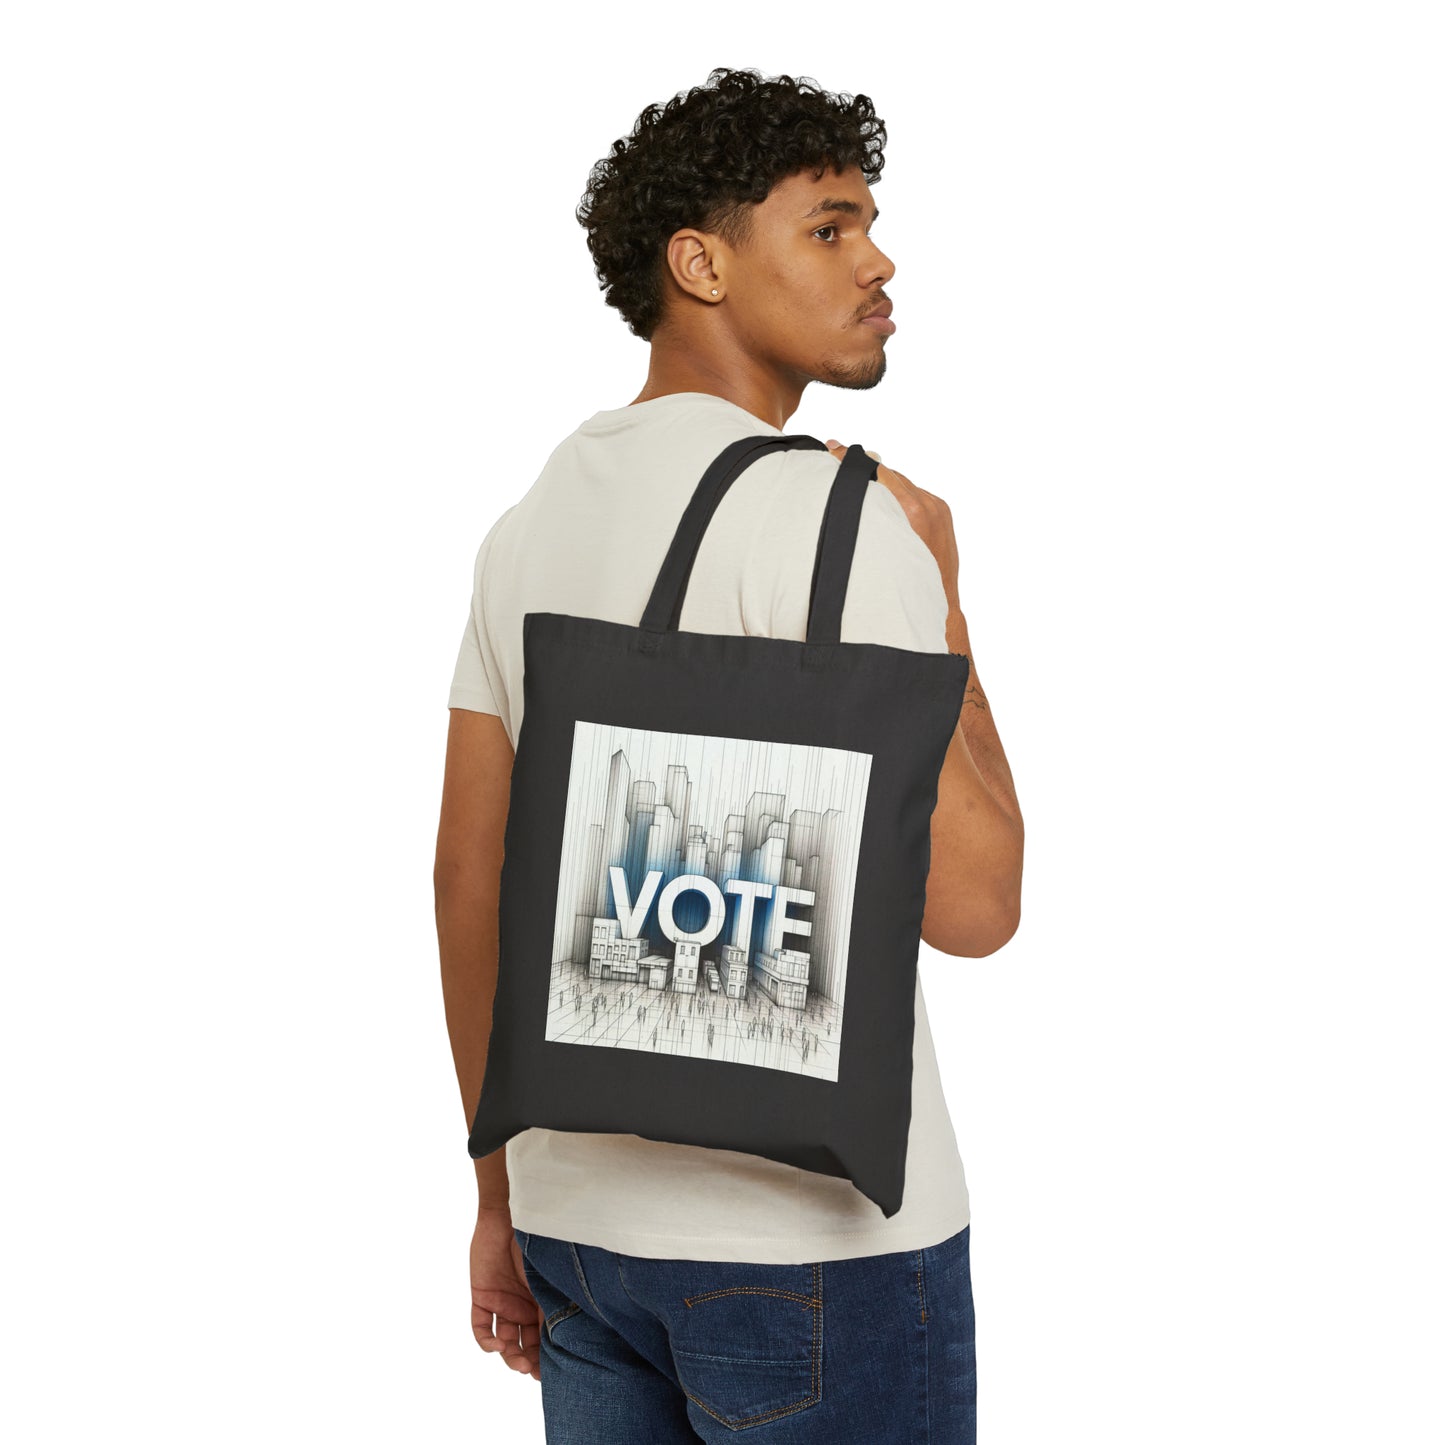 Vote Urban (Canvas Tote Bag)